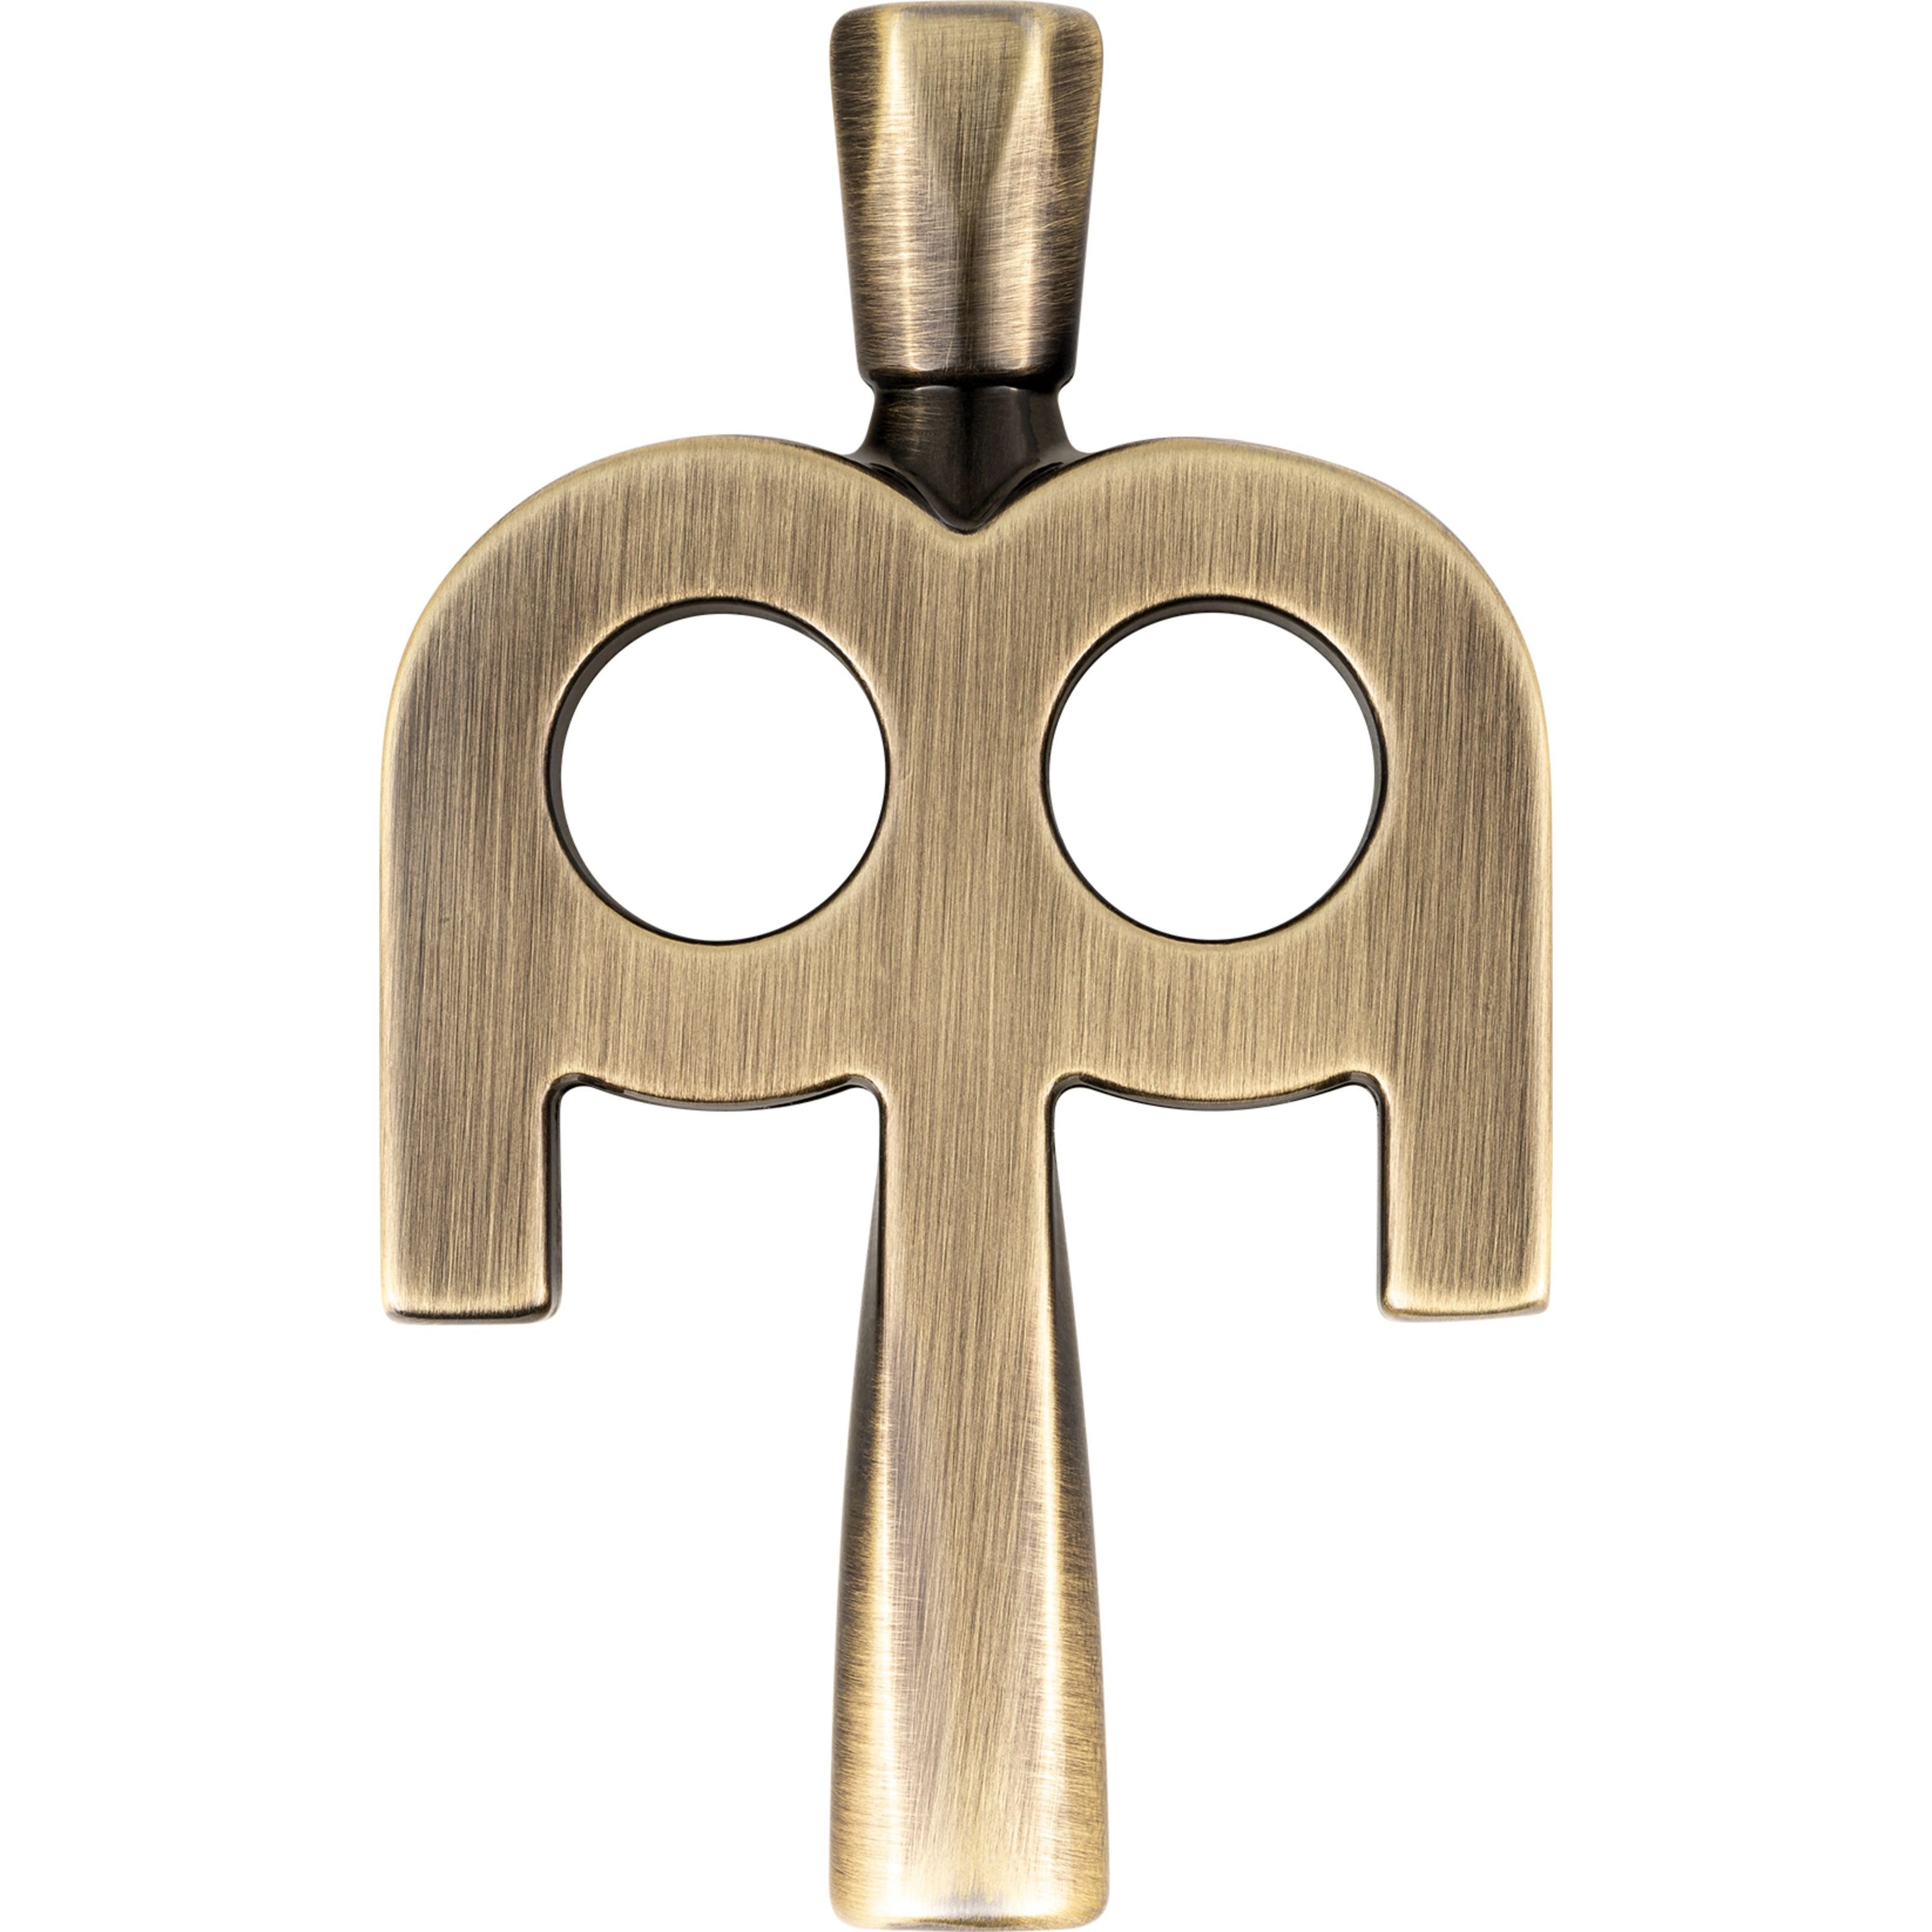 Stimmschlüssel Antique Bronze Key - SB510 für Schlagzeuge Kinetic Spielzeug-Musikinstrument, Percussion Meinl